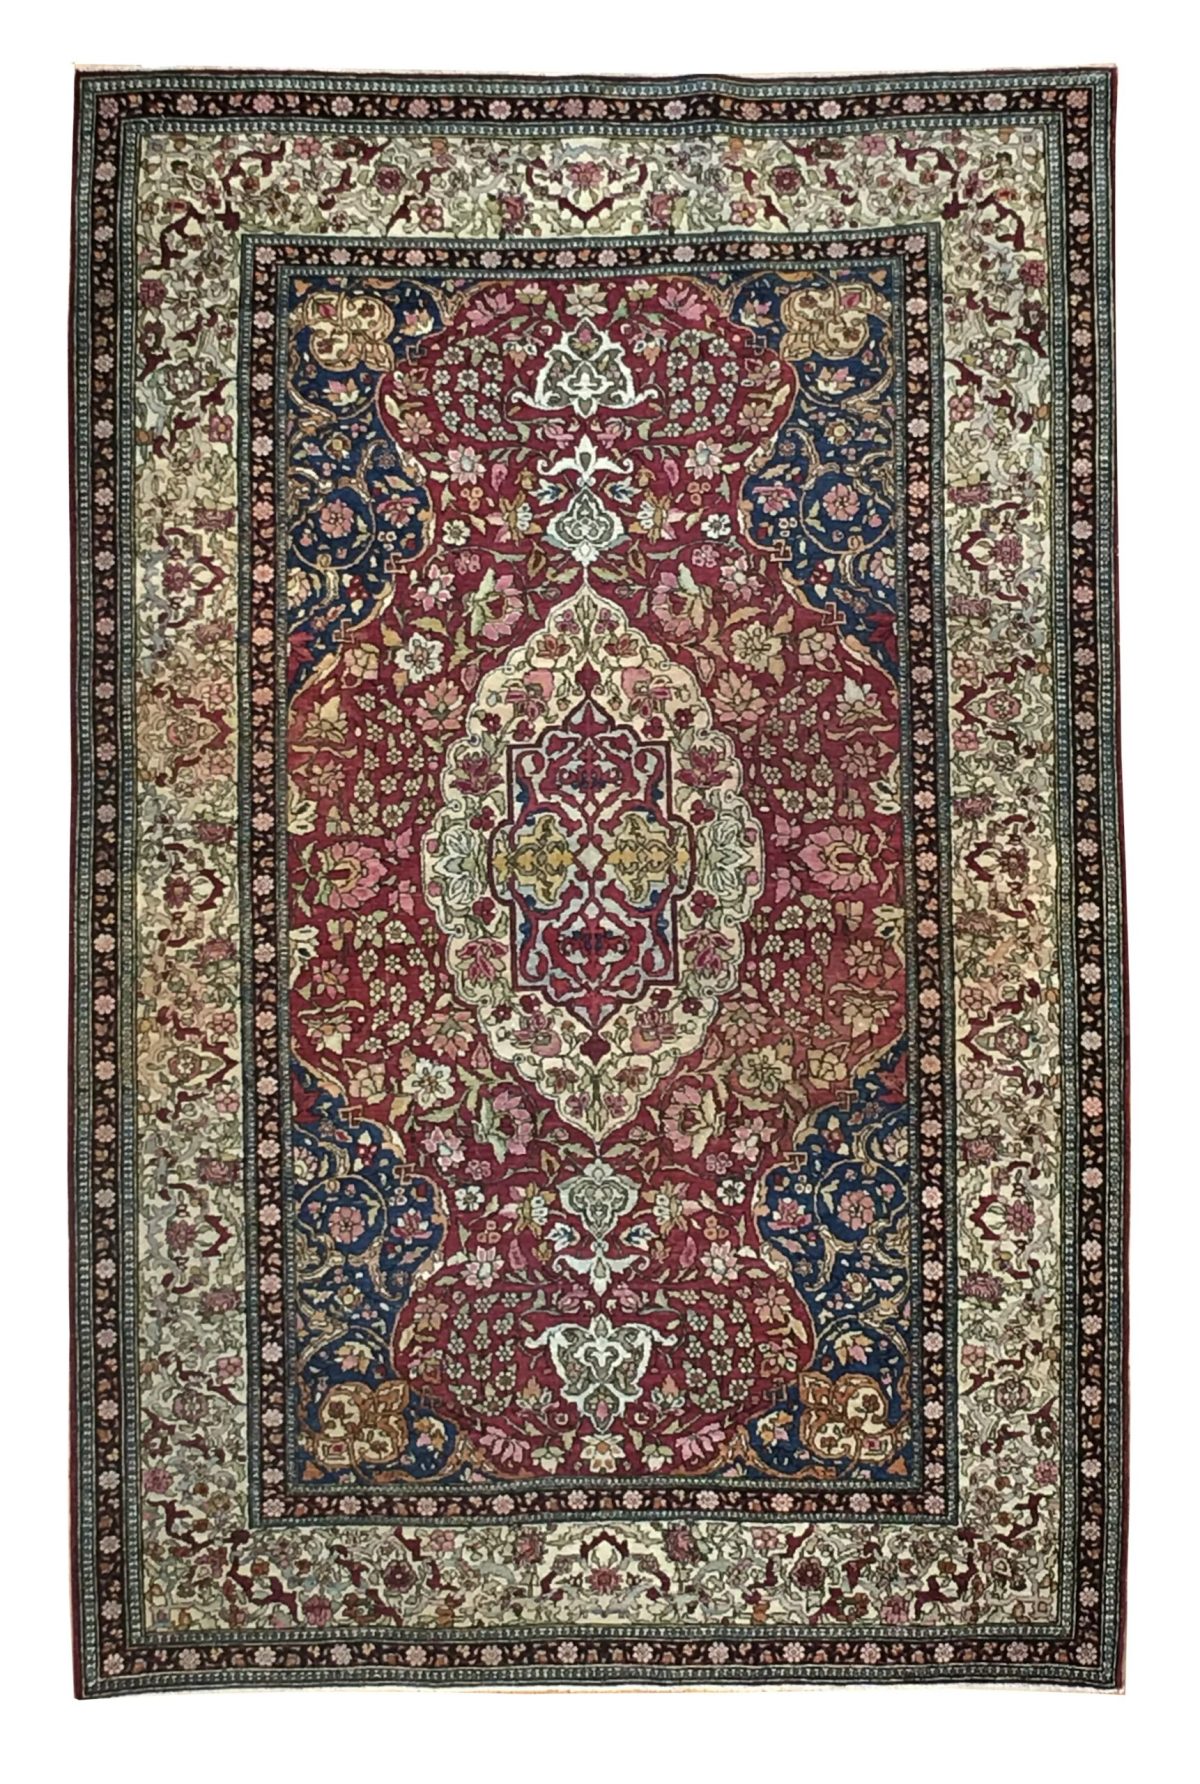 Antique Persian Esfahan 4' 4" x 7' 1" - Shabahang Royal Carpet